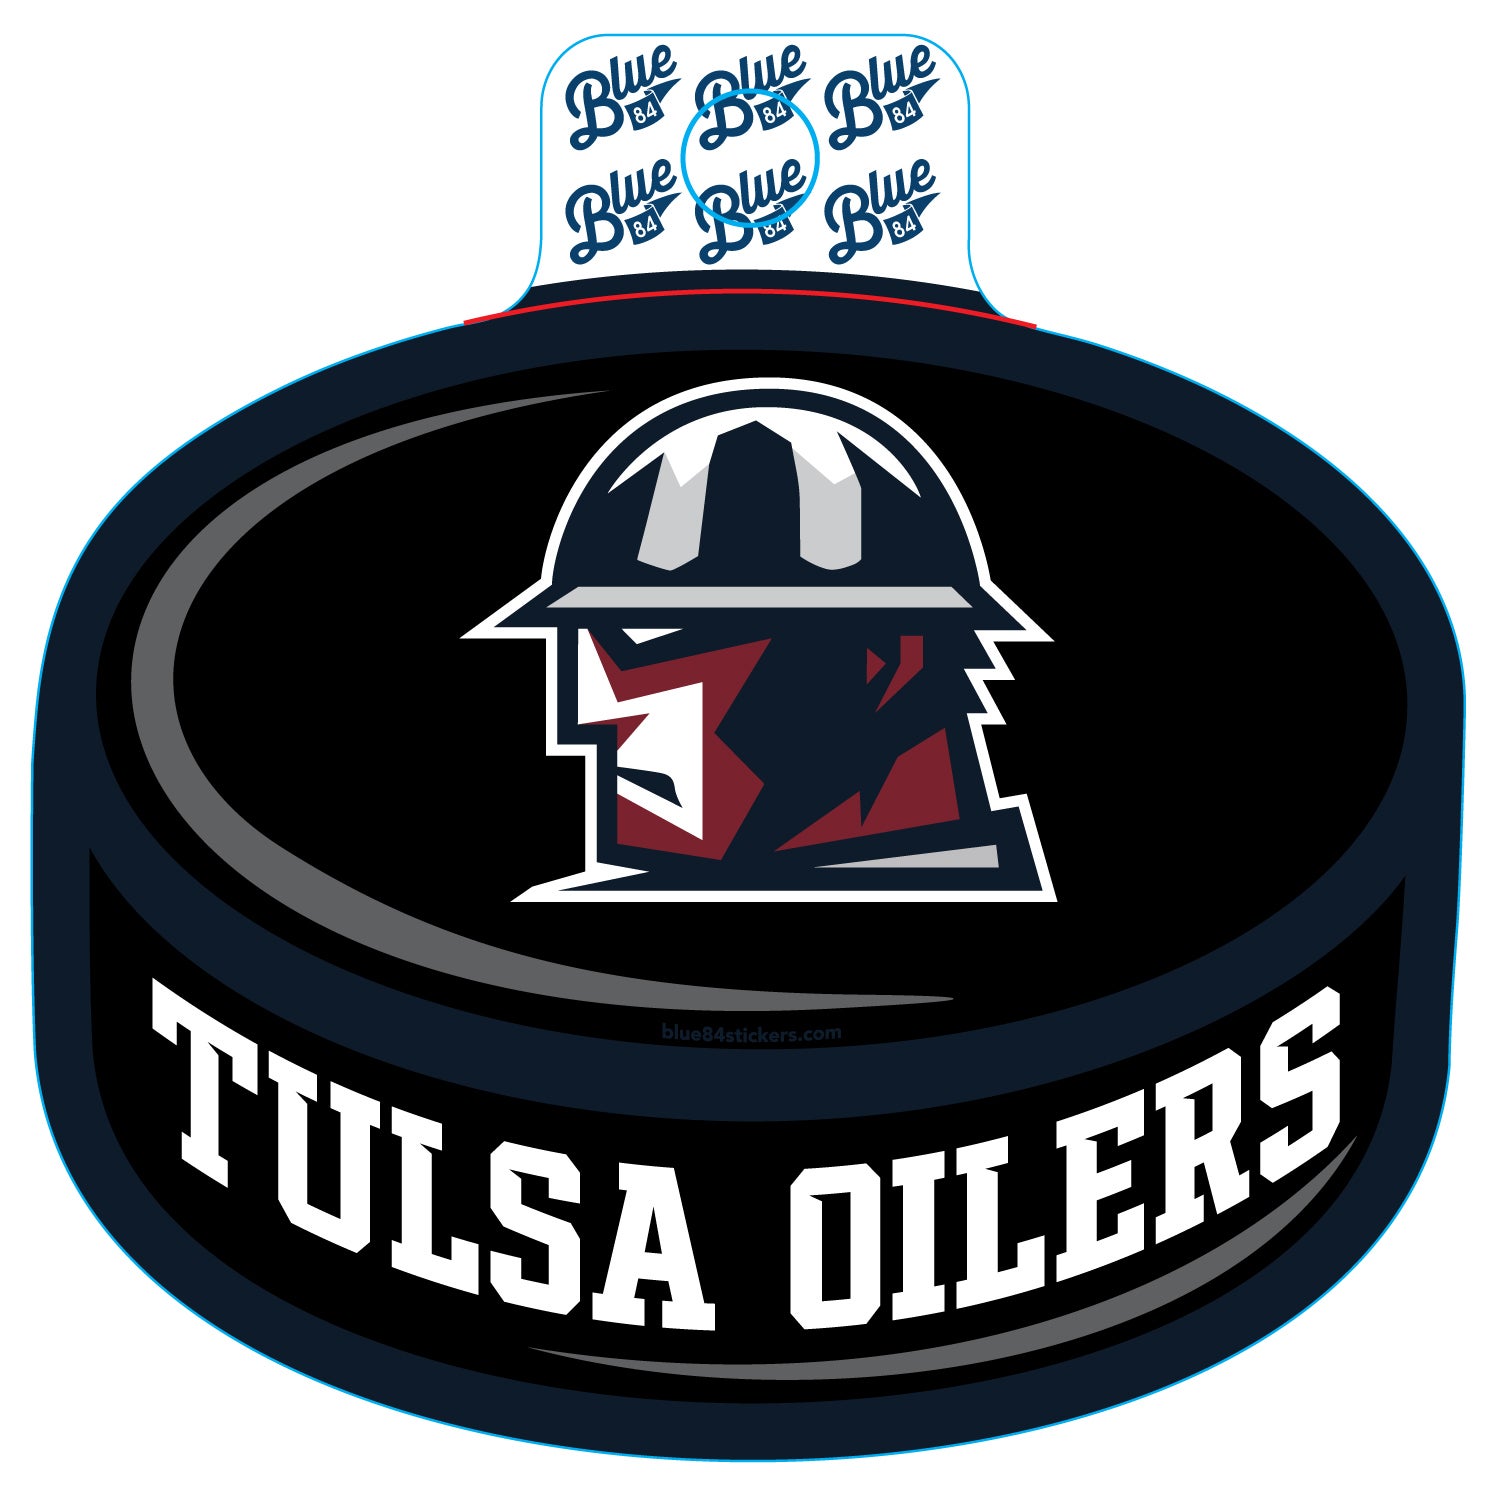 Tulsa Oilers Hockey